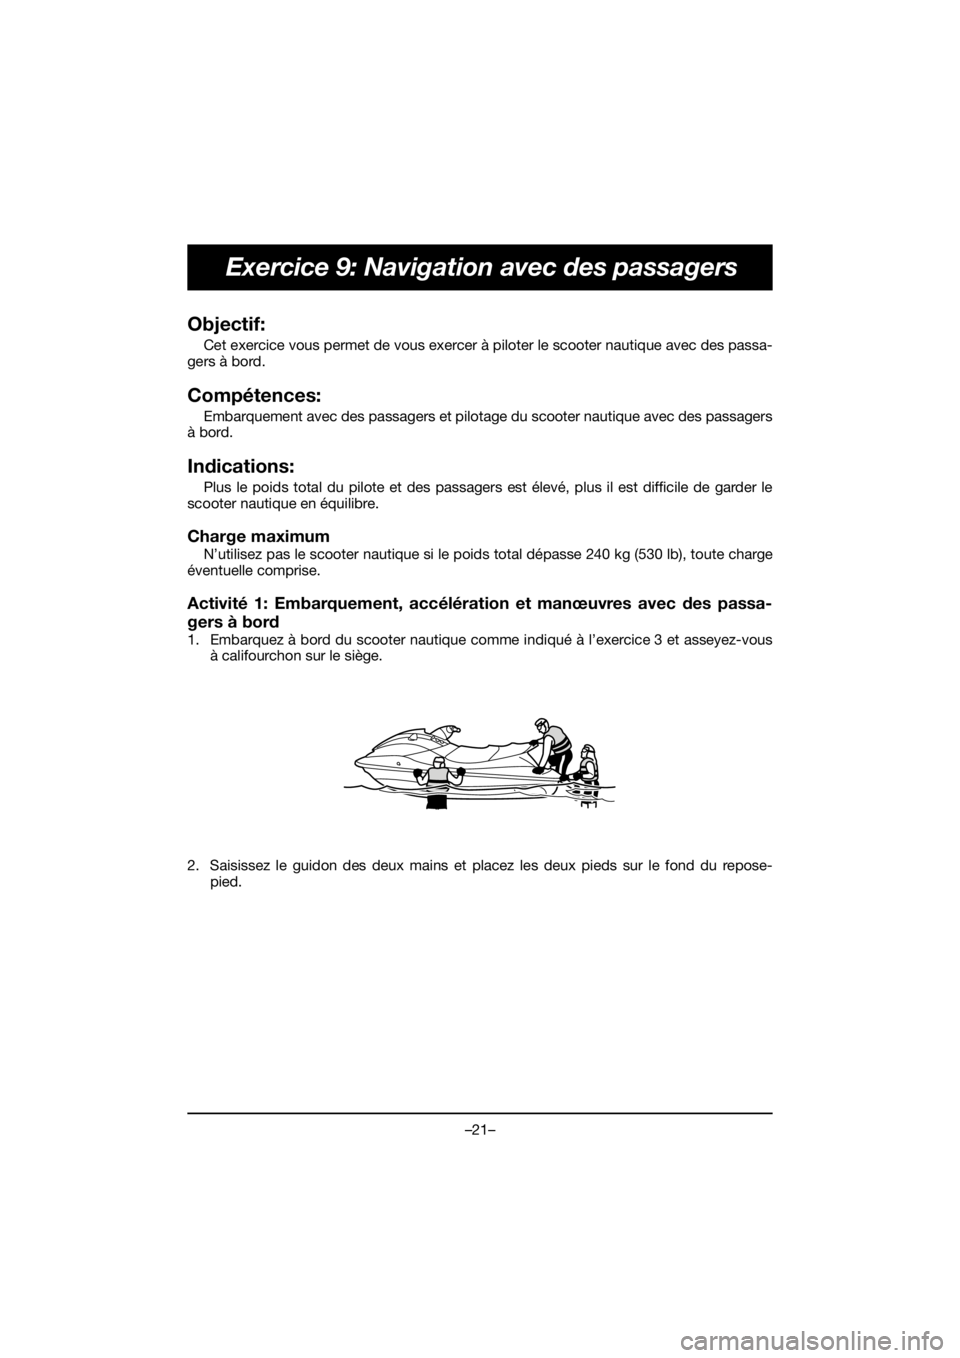 YAMAHA GP1800R SVHO 2020  Manuale duso (in Italian) –21–
Exercice 9: Navigation avec des passagers
Objectif: 
Cet exercice vous permet de vous exercer à piloter le scooter nautique avec des passa-
gers à bord.
Compétences: 
Embarquement avec des